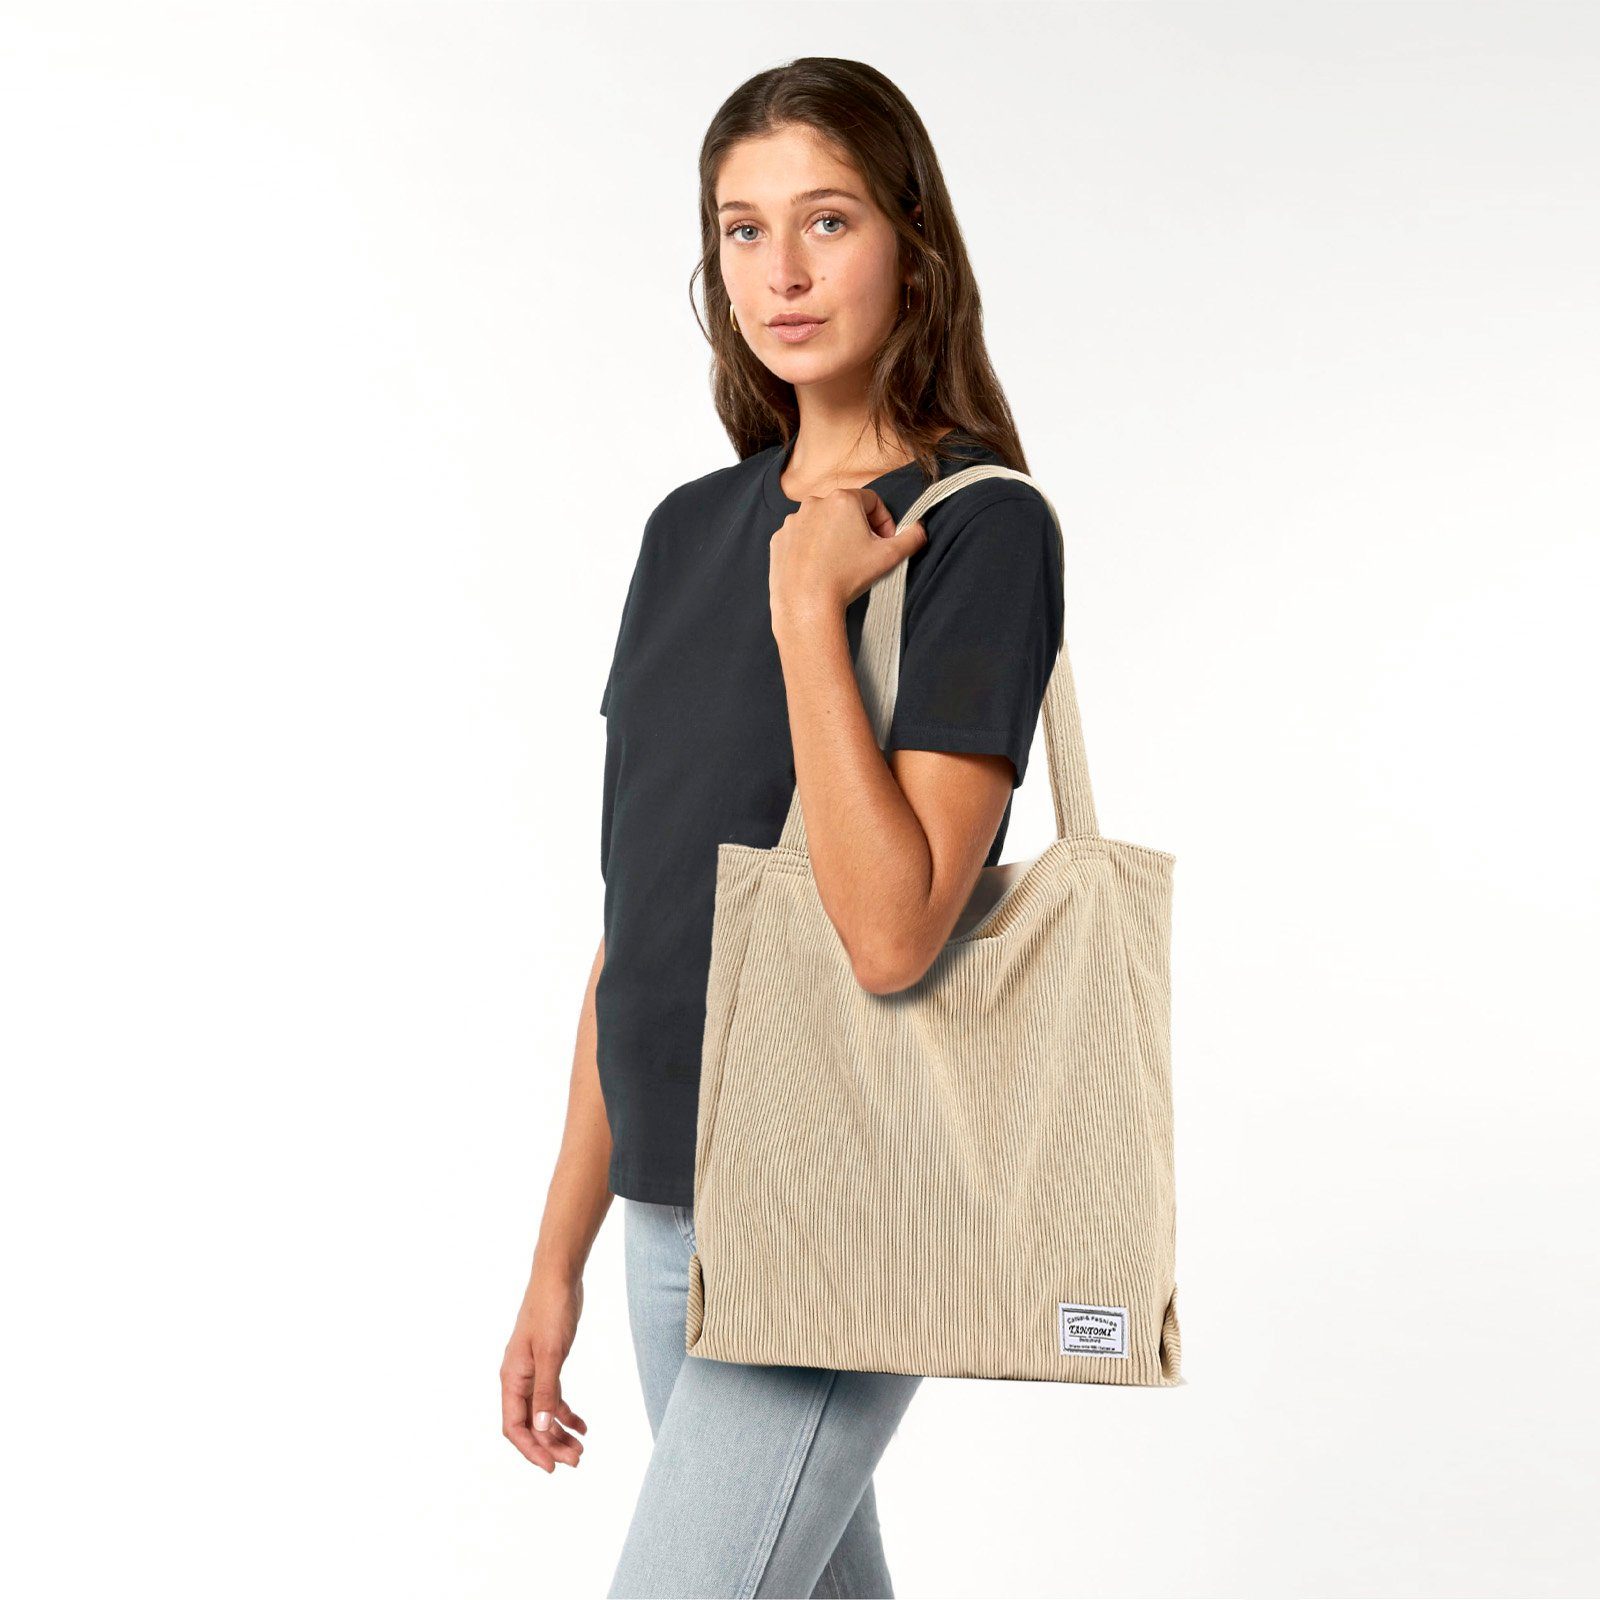 Damenhandtasche, Cordtasche Beige mit Henkeltasche Tasche Damen, Reißverschluss-Einkaufstasche TAN.TOMI Handtasche,